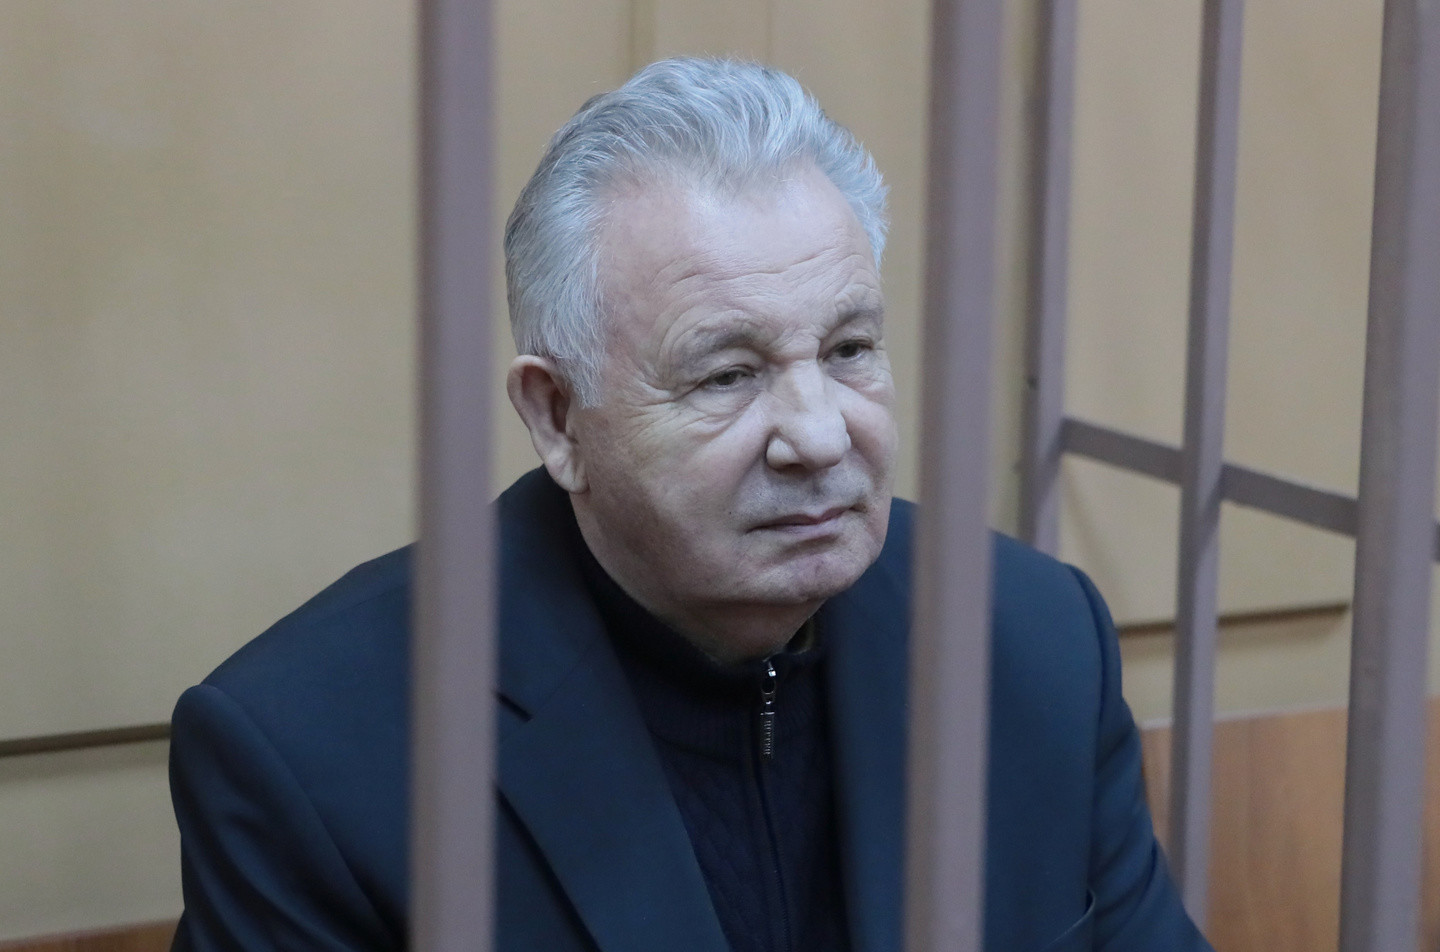 Экс-полпред Ишаев возместил вменяемый ему ущерб от аферы в 5,7 млн рублей